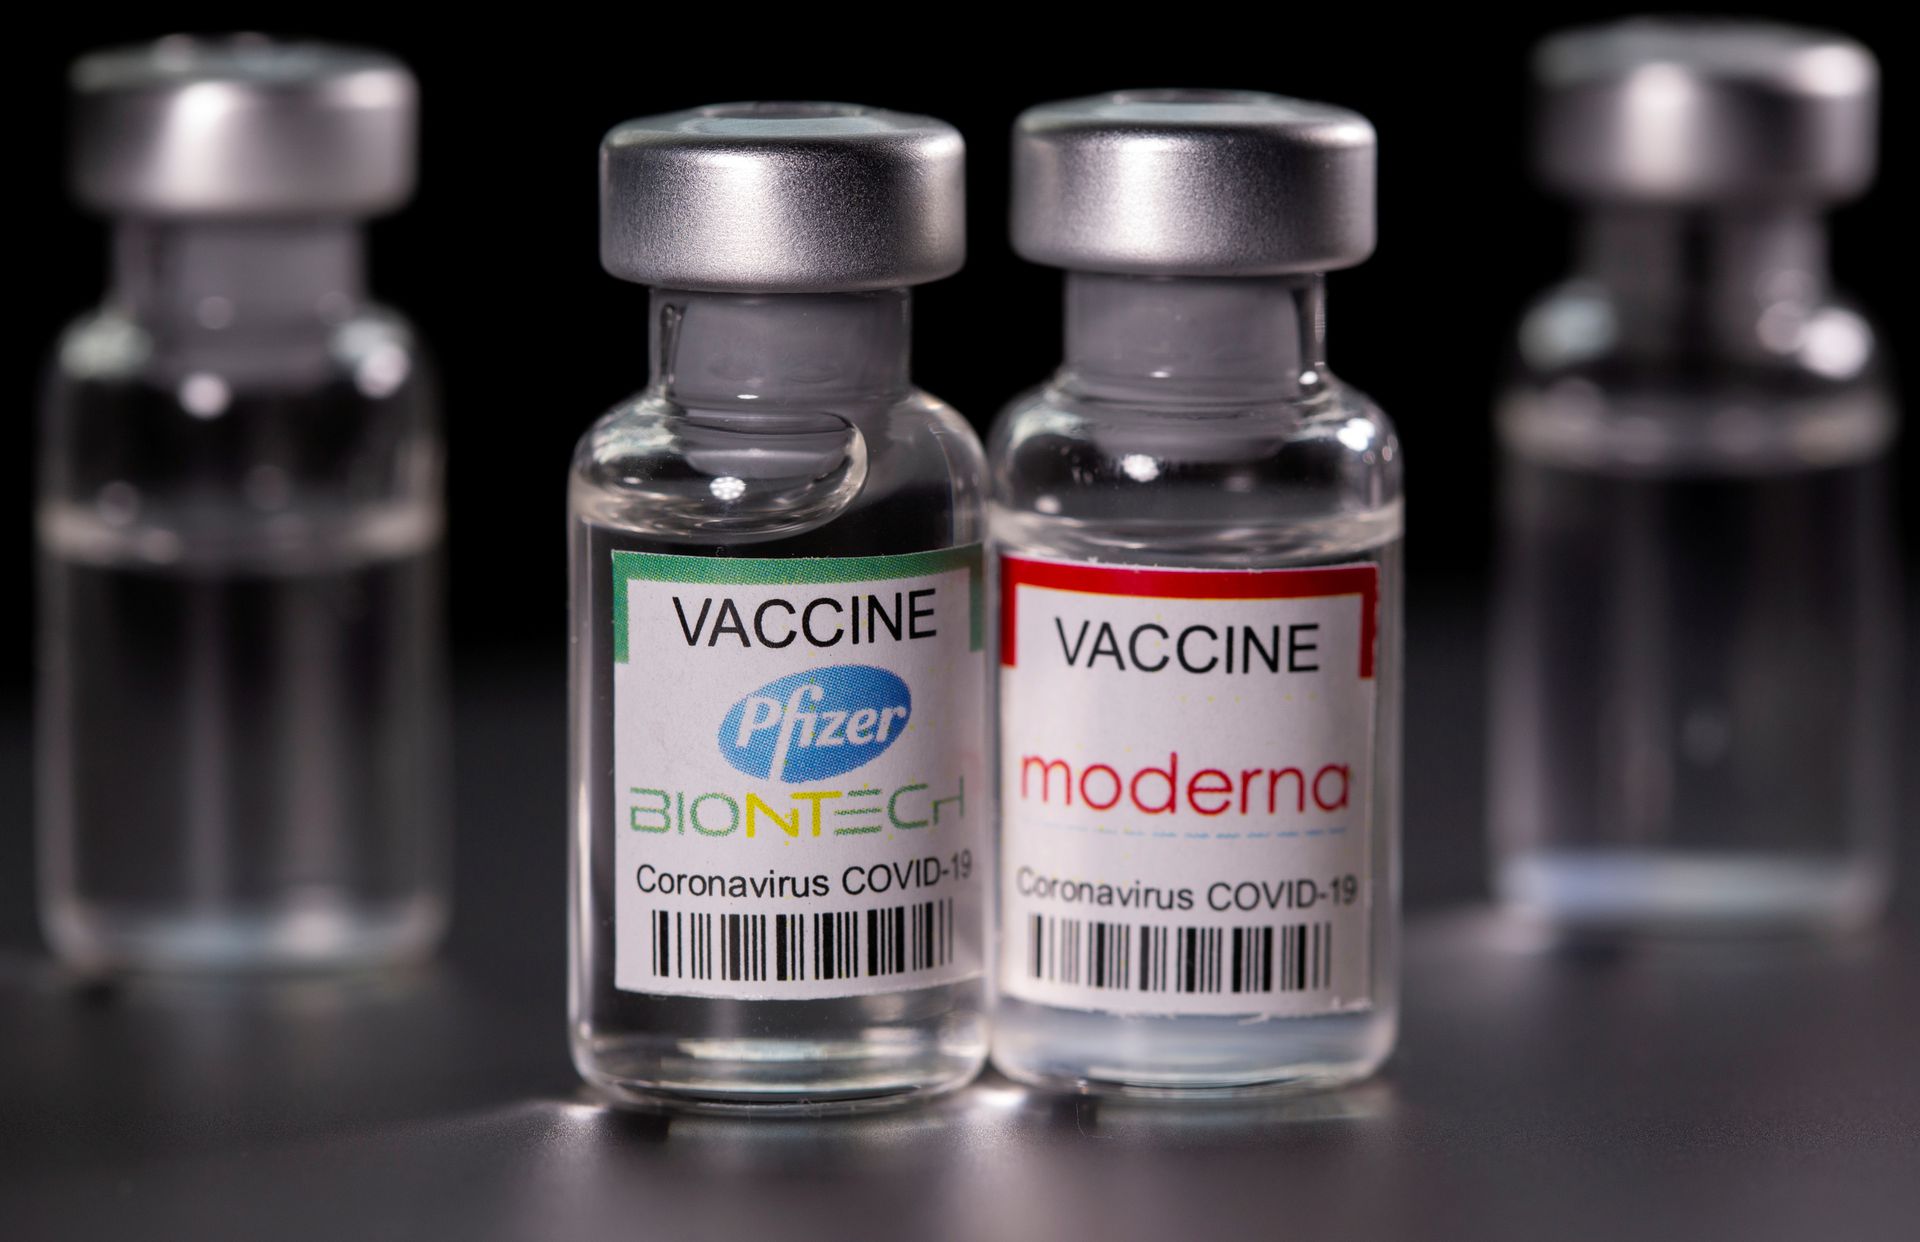 Cân bằng quyền sở hữu trí tuệ đối với sáng chế liên quan đến vaccine - một số giải pháp hoàn thiện pháp luật Việt Nam